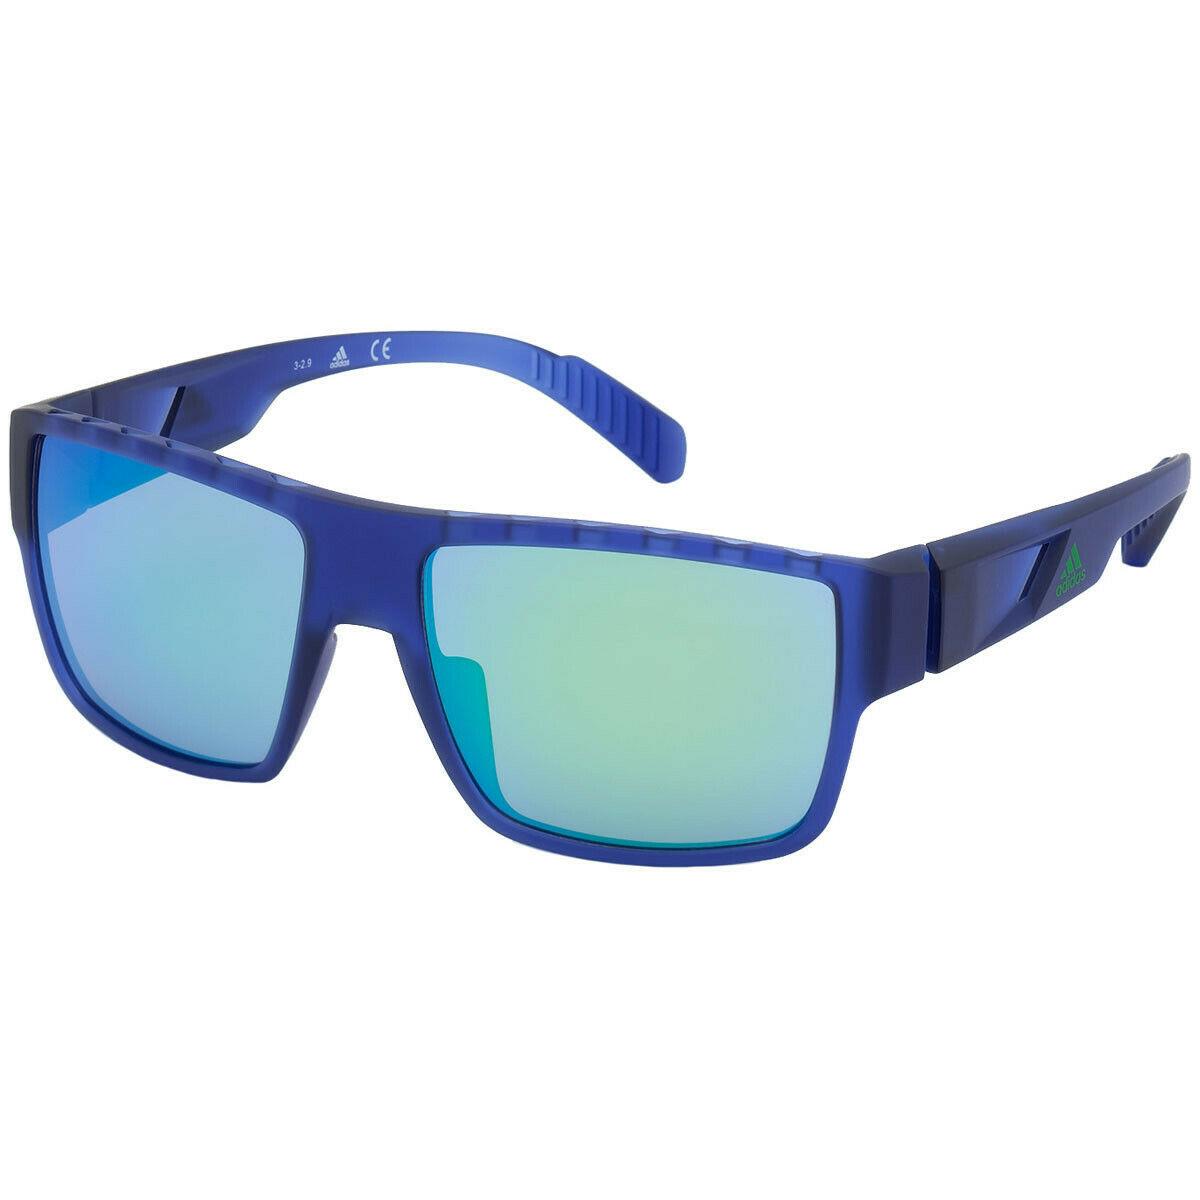 Adidas Sport Men Sunglasses SP0006S-91Q Matte Blue Frame Mirrored Green Lenses